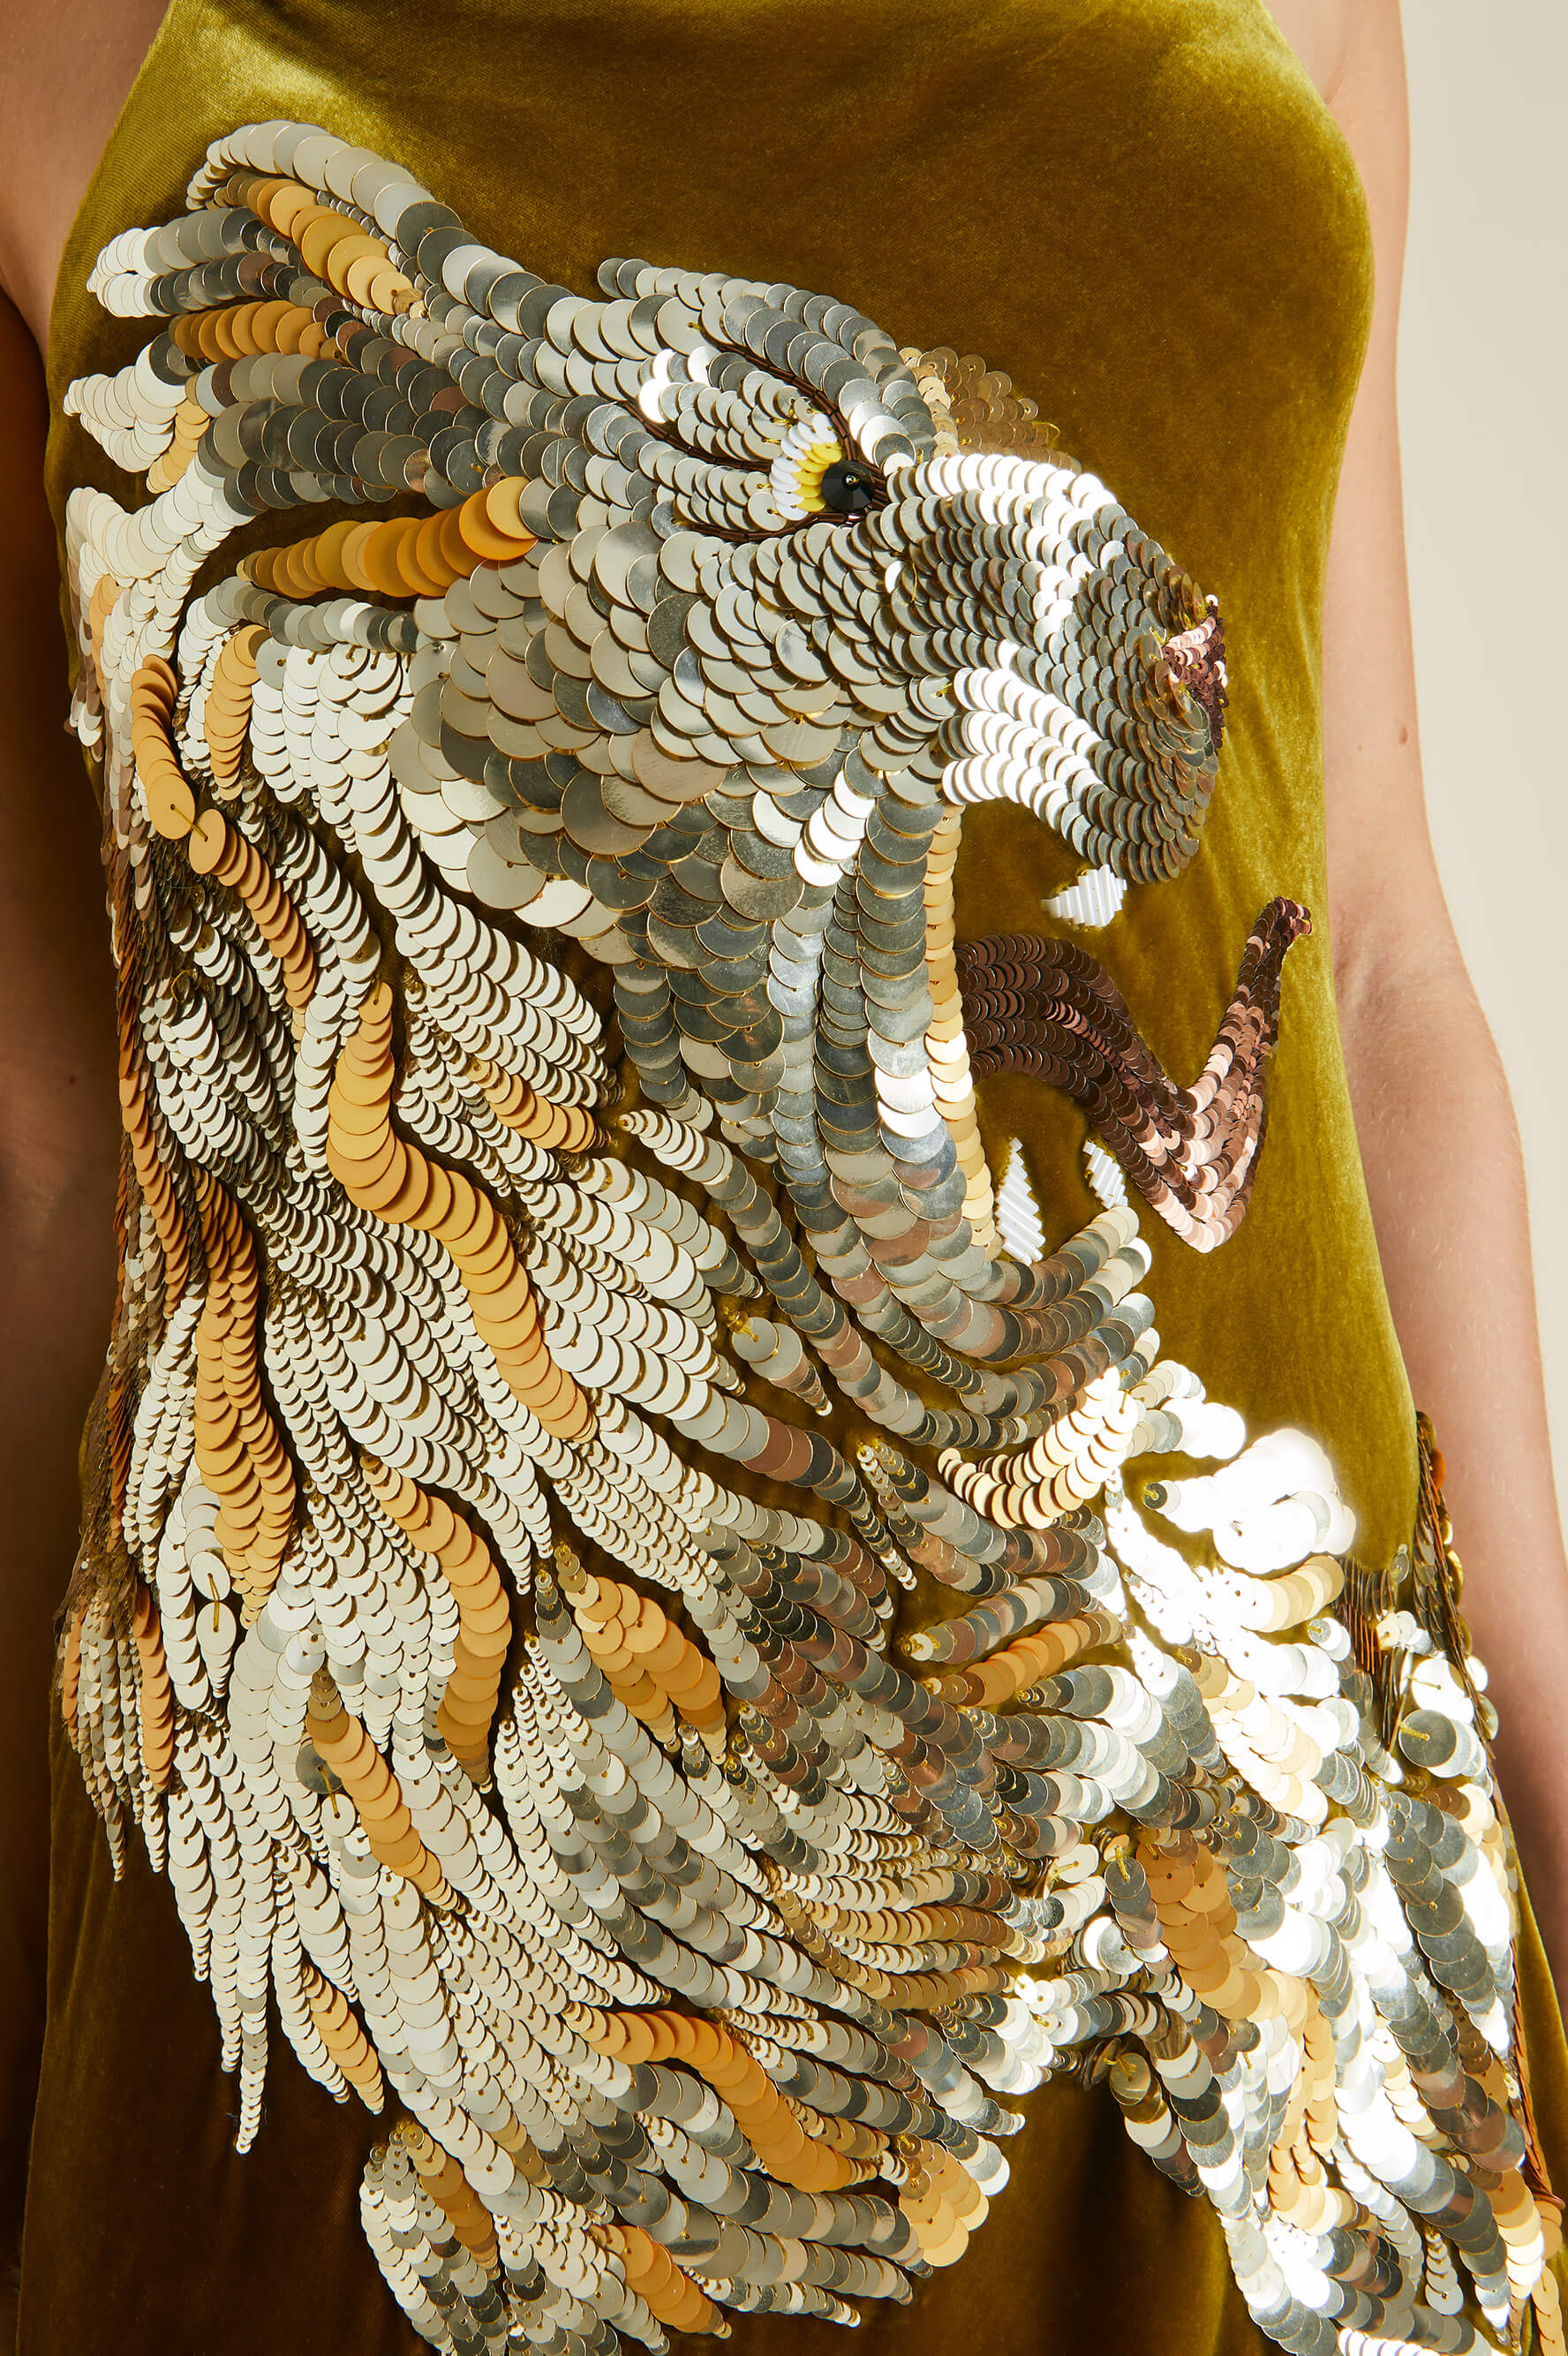 Icon August Gold Embellished Slip Dress in Silk Velvet